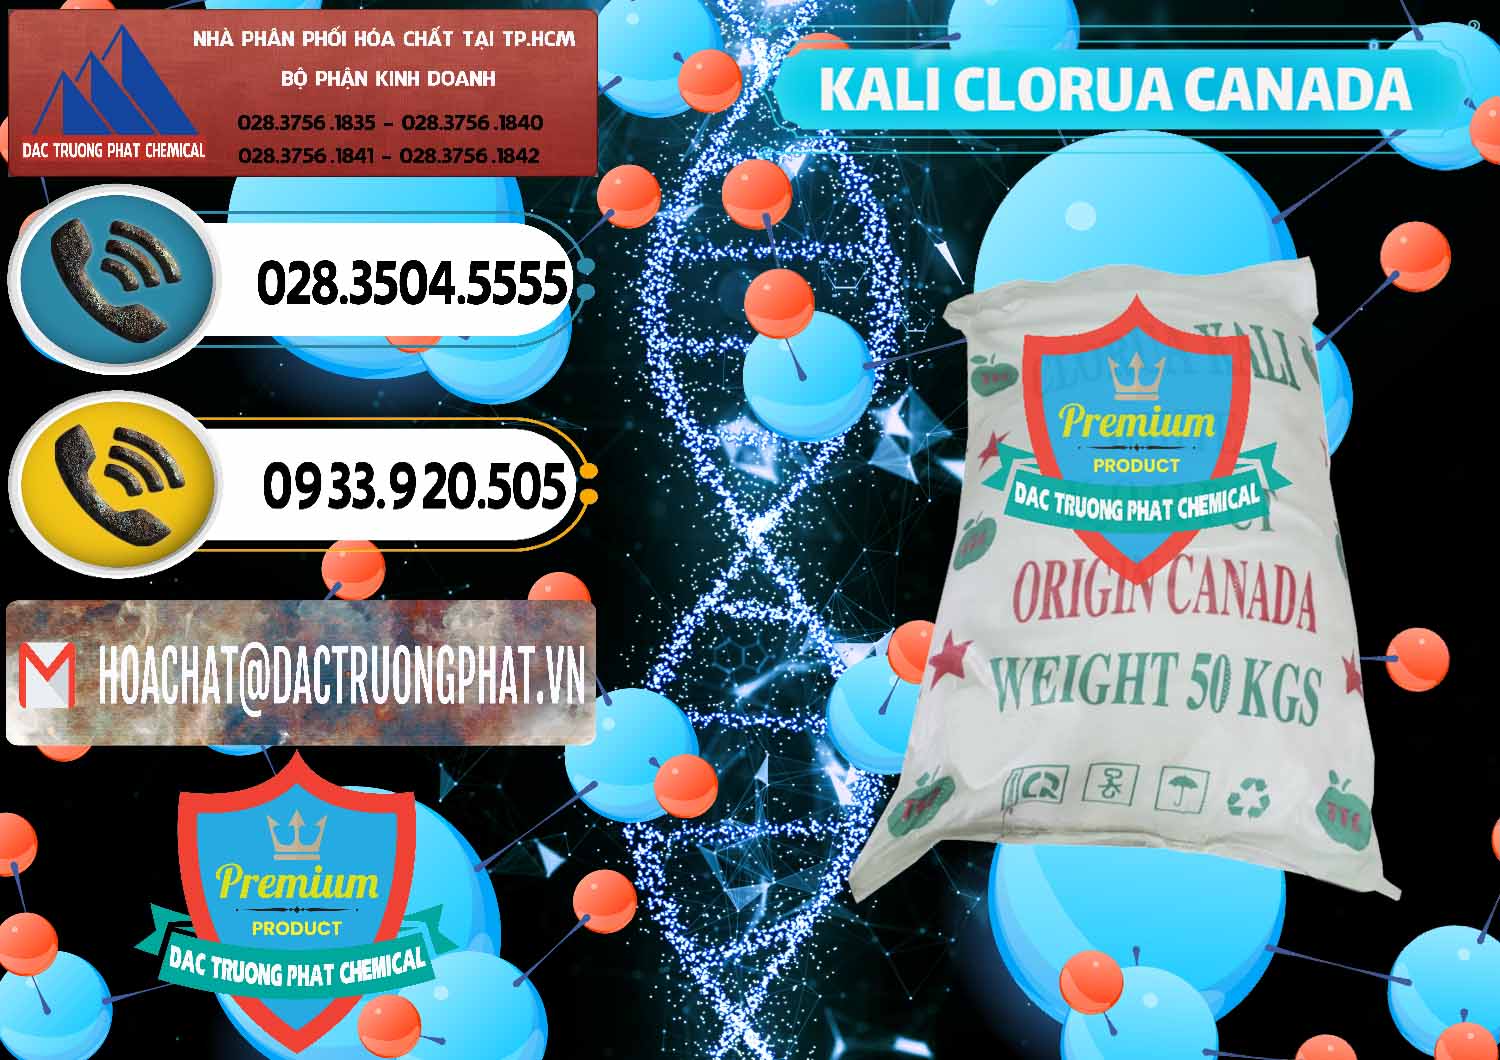 Kinh doanh và bán KCL – Kali Clorua Trắng Canada - 0437 - Phân phối - cung ứng hóa chất tại TP.HCM - hoachatdetnhuom.vn